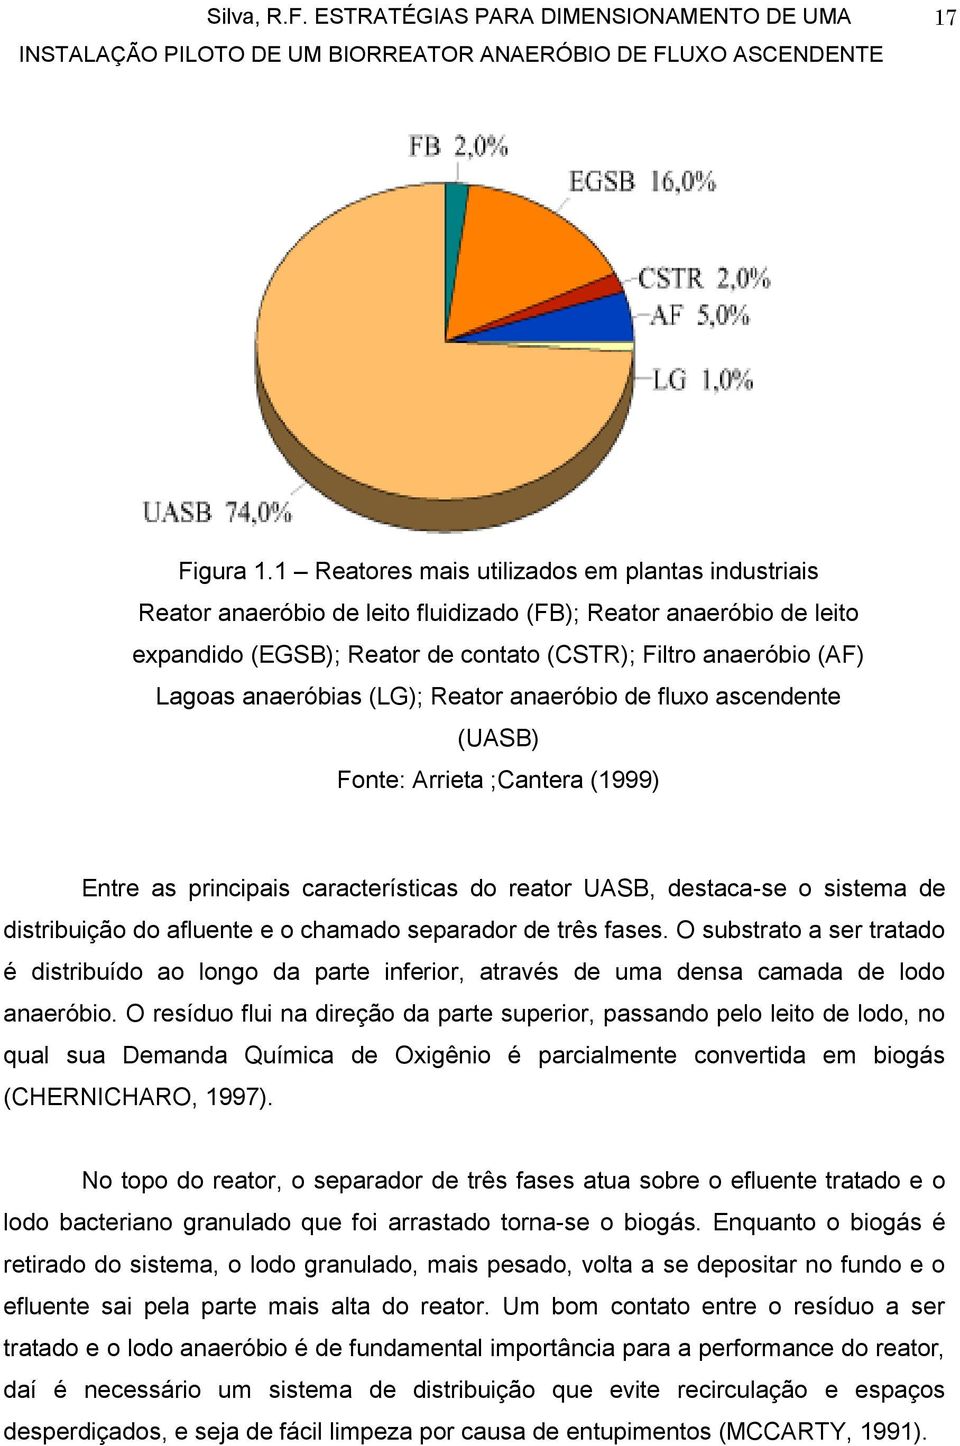 anaeróbias (LG); Reator anaeróbio de fluxo ascendente (UASB) Fonte: Arrieta ;Cantera (1999) Entre as principais características do reator UASB, destaca-se o sistema de distribuição do afluente e o